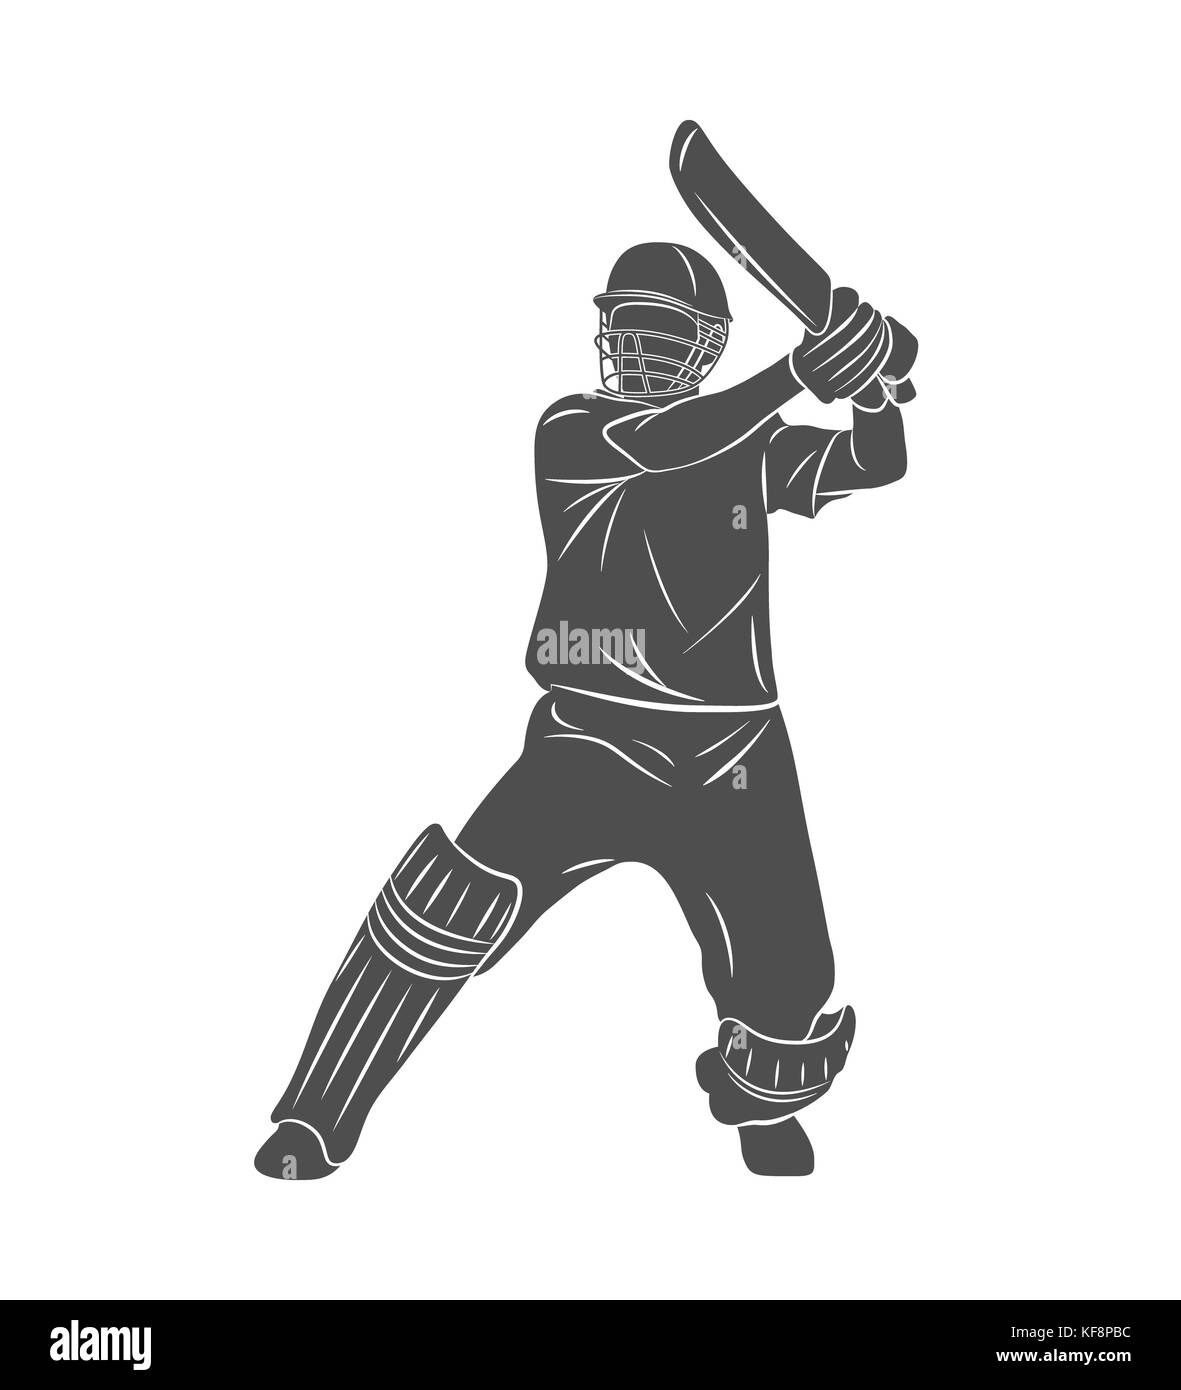 Abstract batsman playing cricket Stock Photo